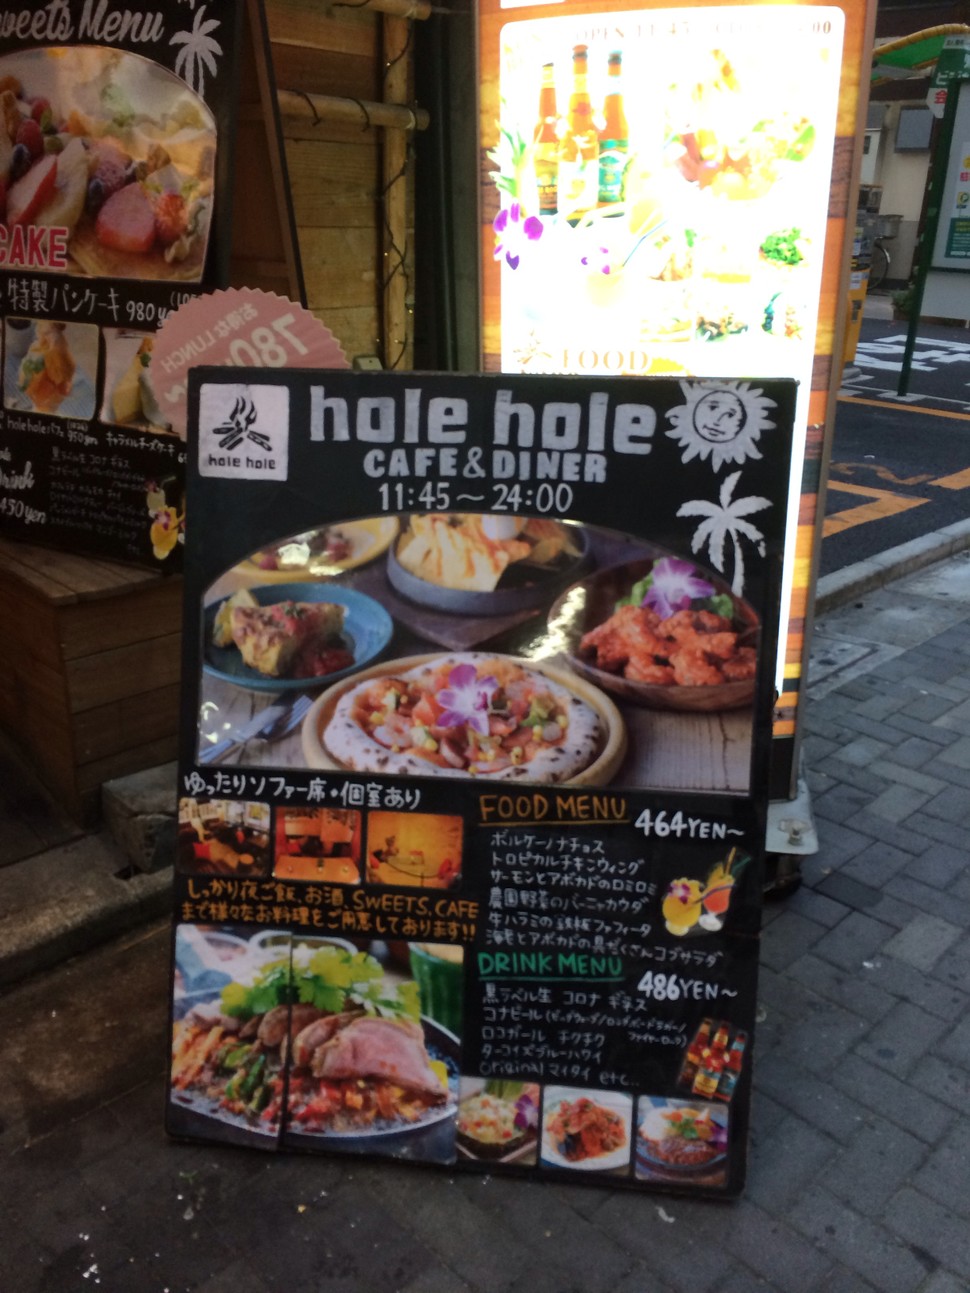 閉店 Hole Hole Cafe Diner 池袋の店舗情報 味 雰囲気 アクセス等 Playlife プレイライフ